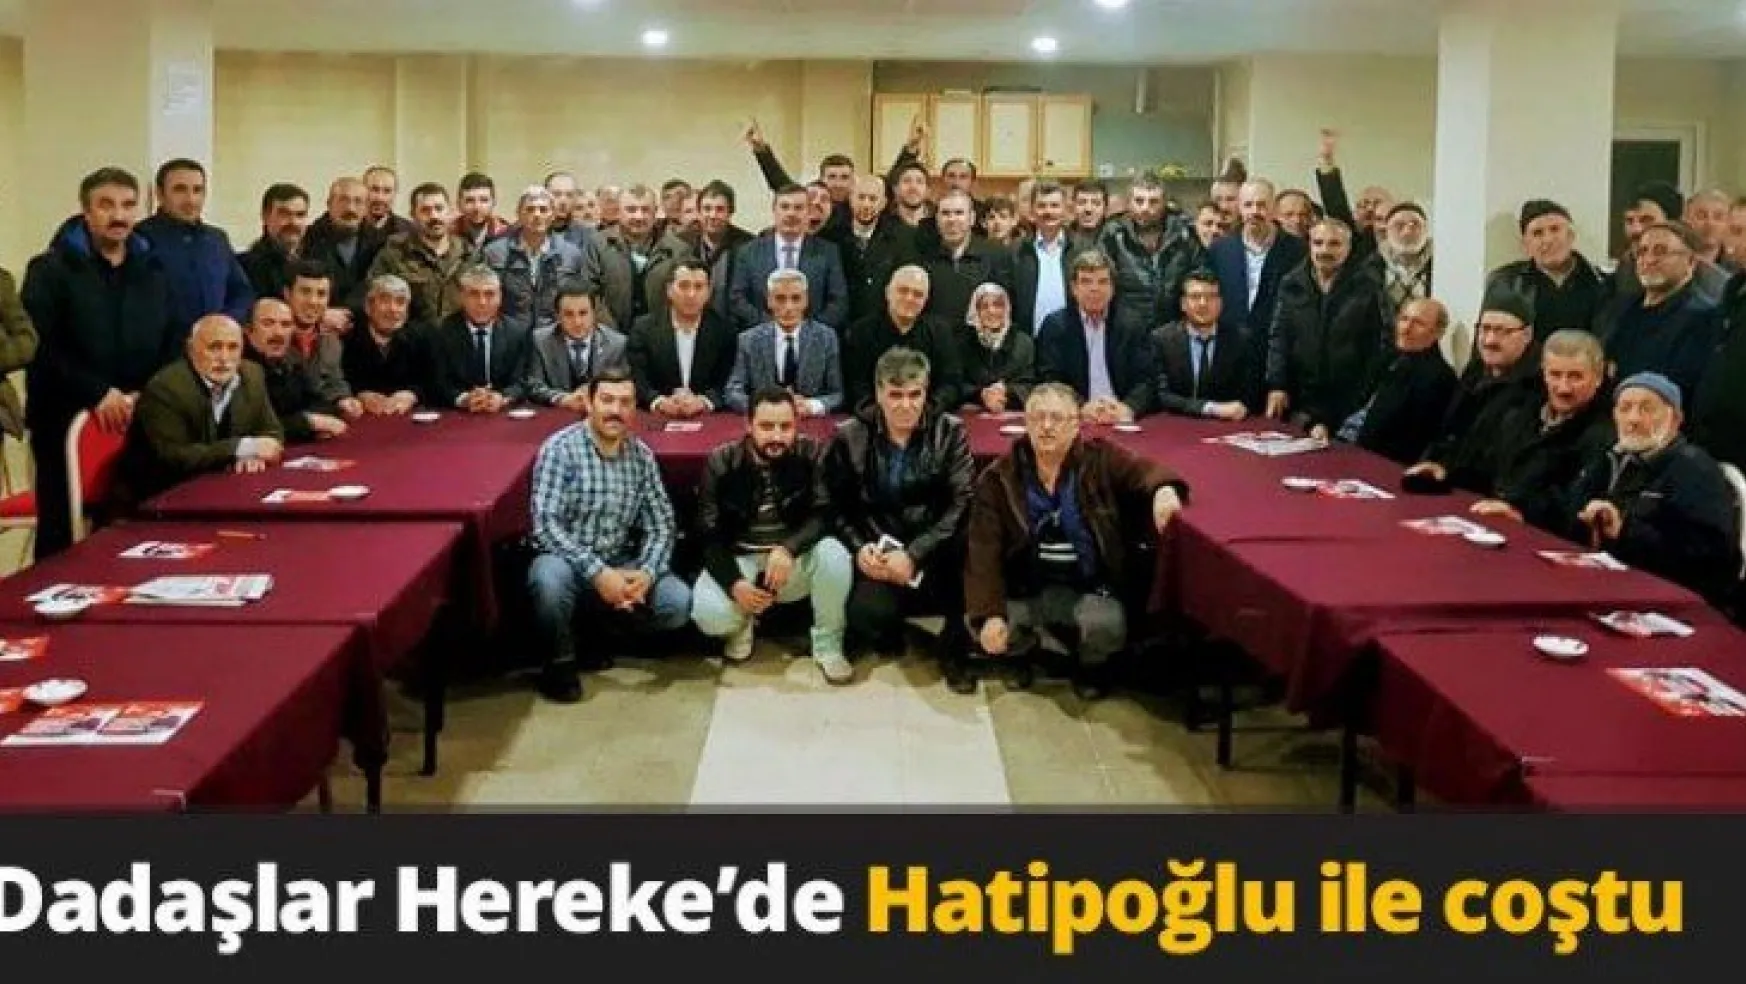 Dadaşlar Hereke'de Hatipoğlu ile coştu